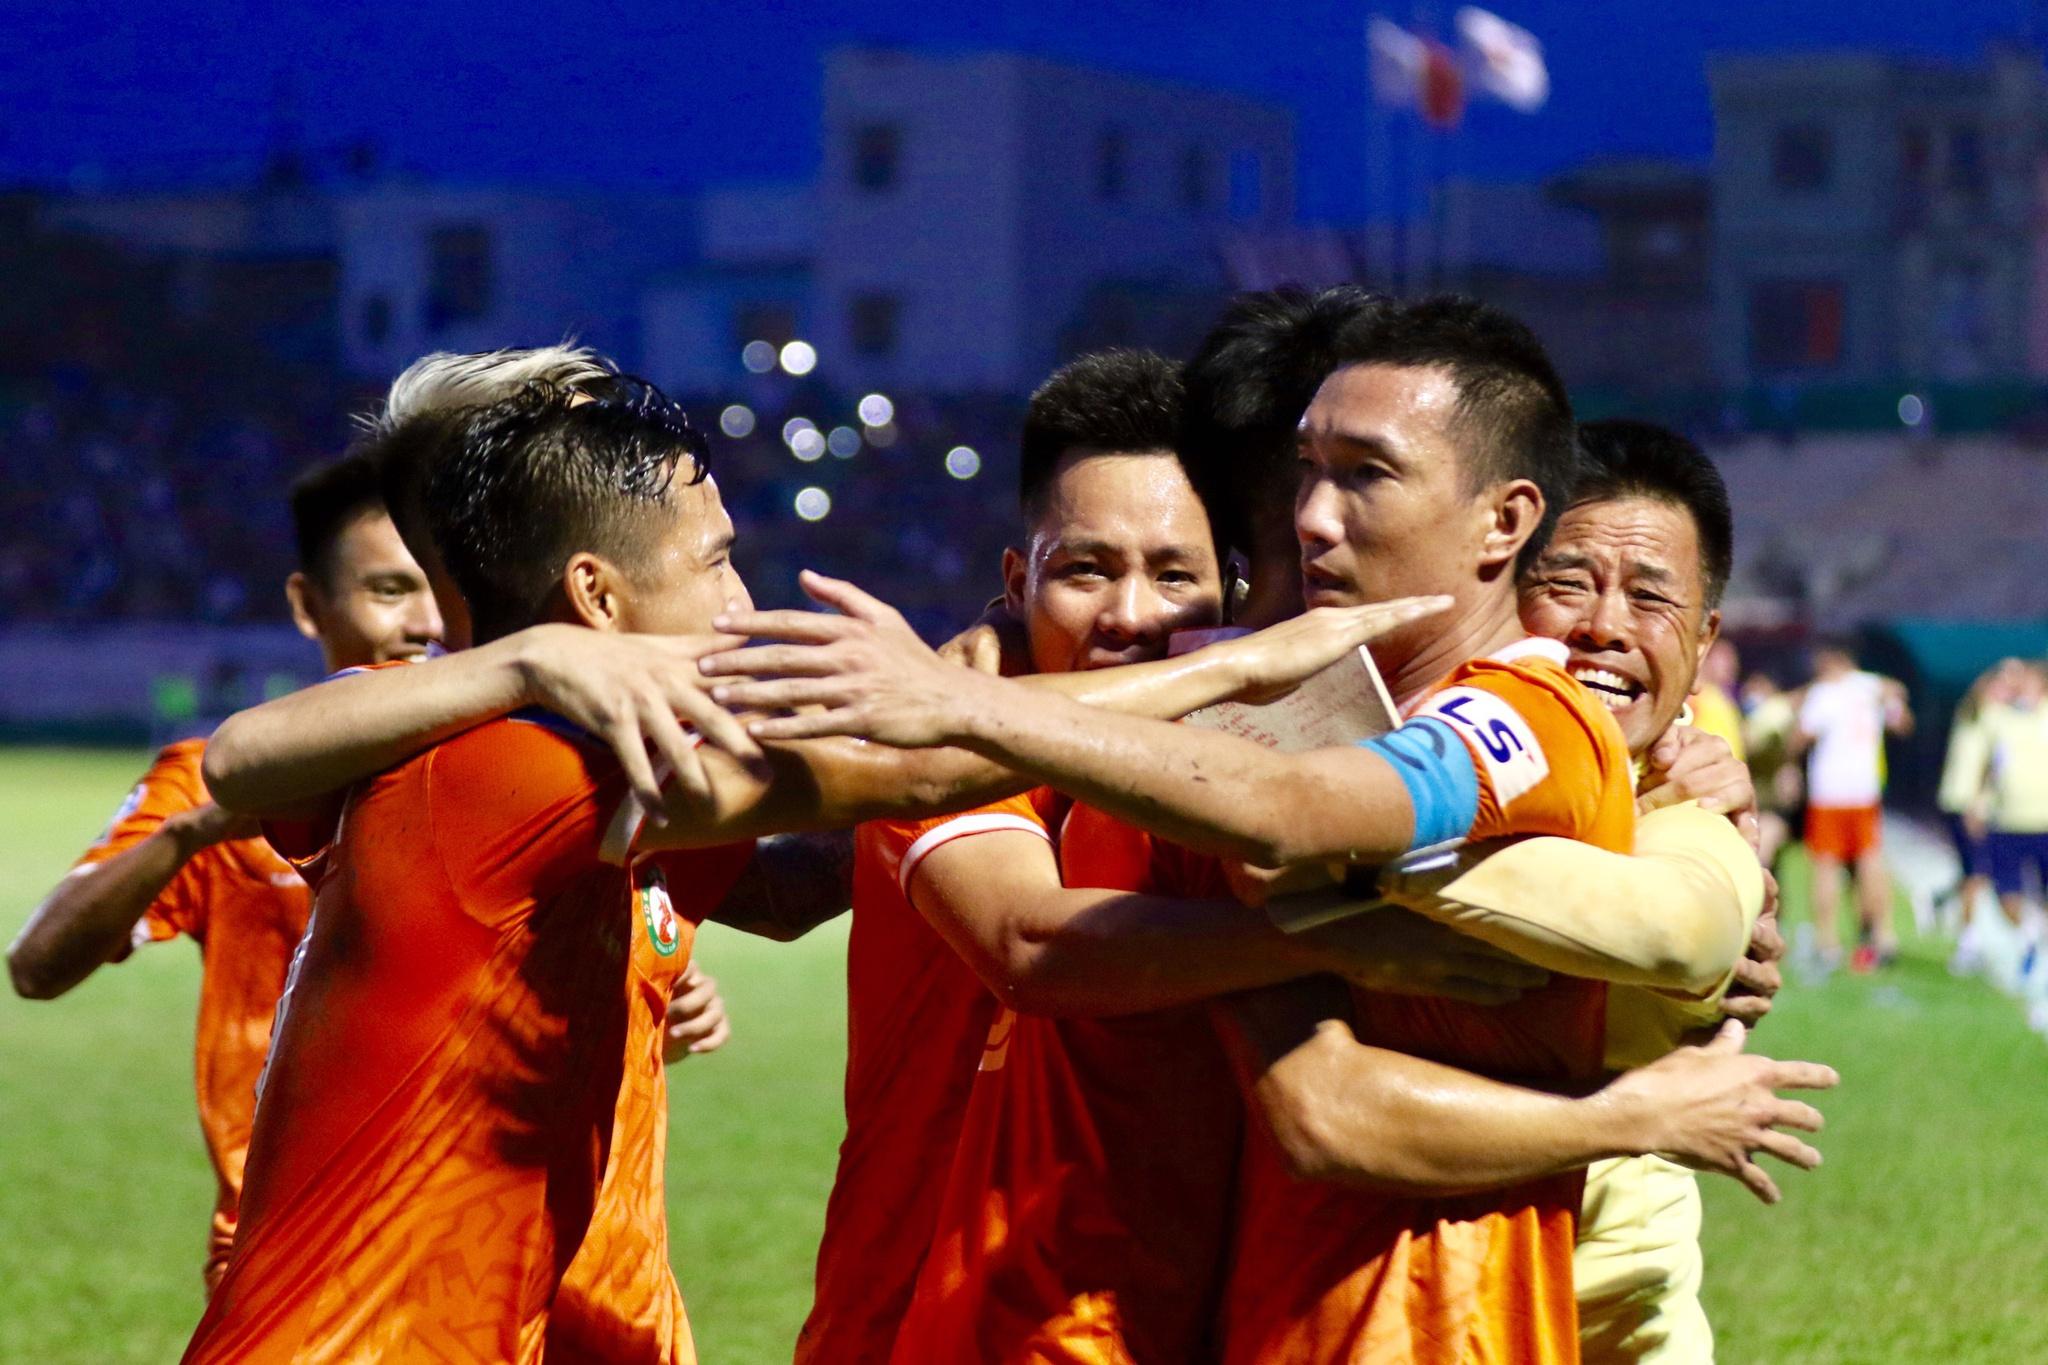 Kết quả suất lên hạng V-League: Chúc mừng CLB Bình Định, tiếc cho Bà Rịa - Vũng Tàu! - ảnh 25